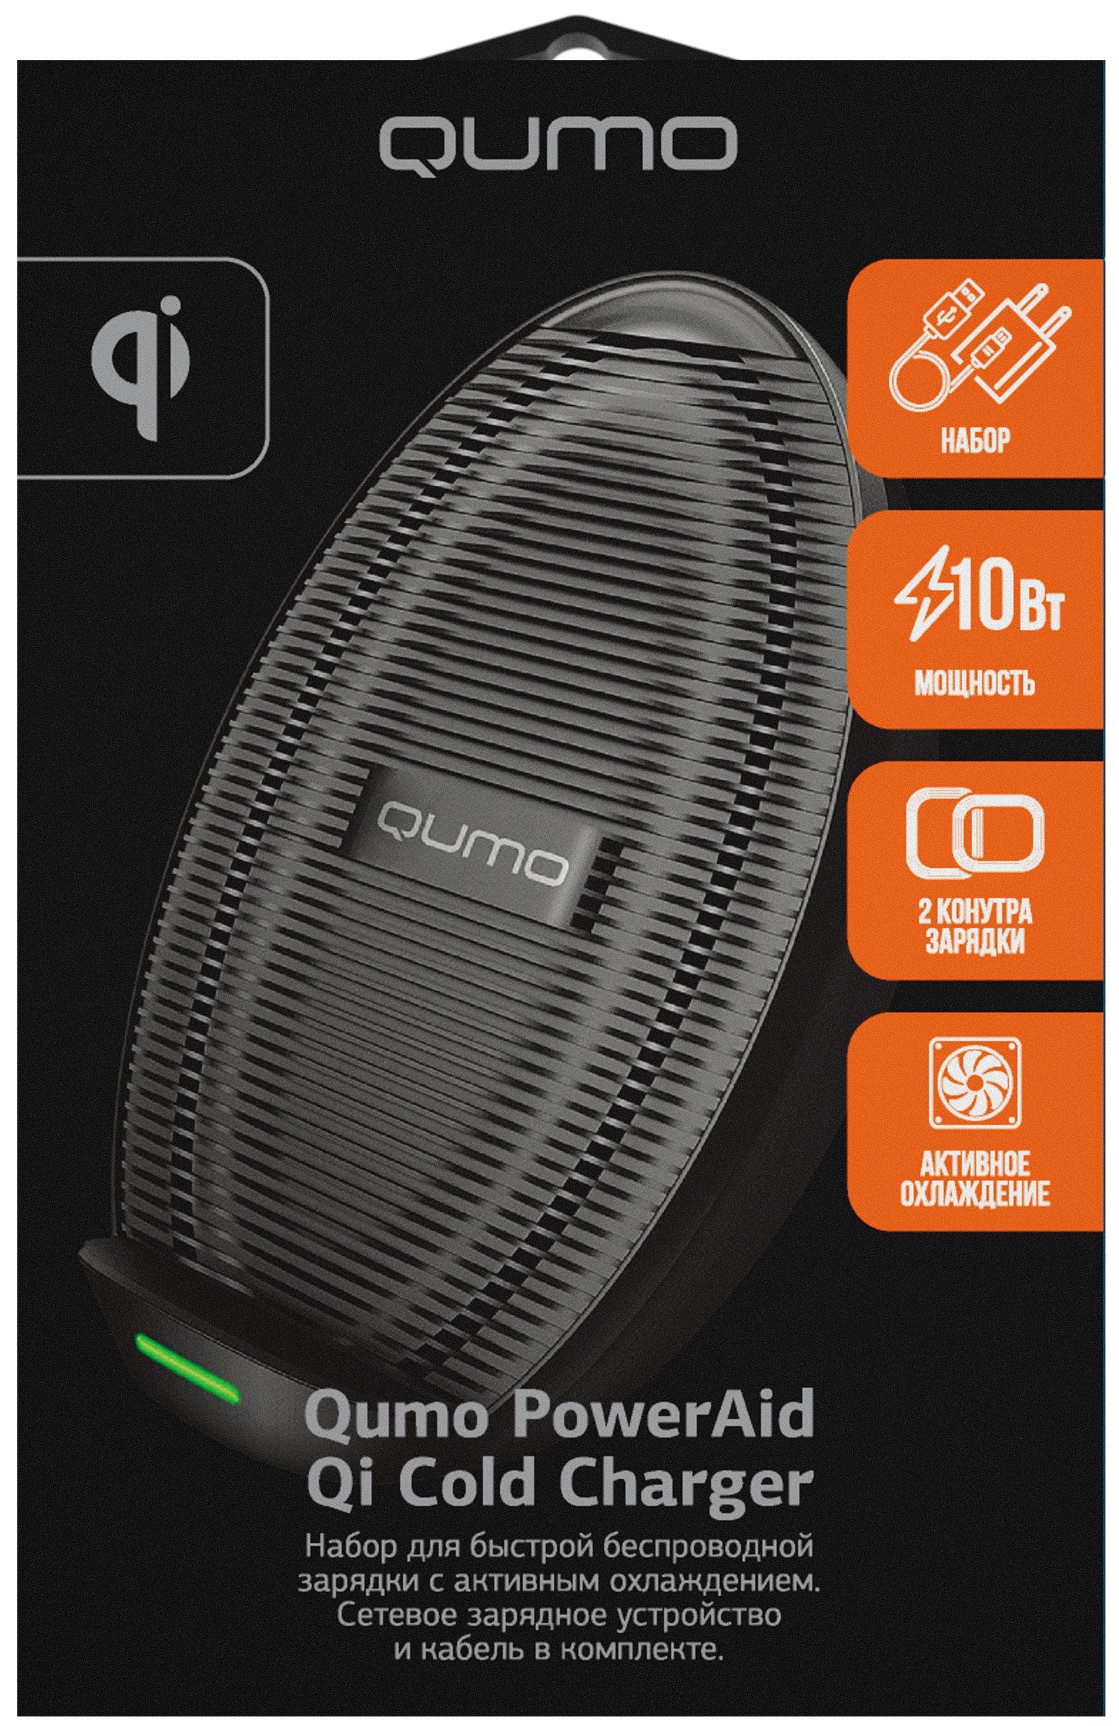 Беспроводное зарядное устройство Qumo